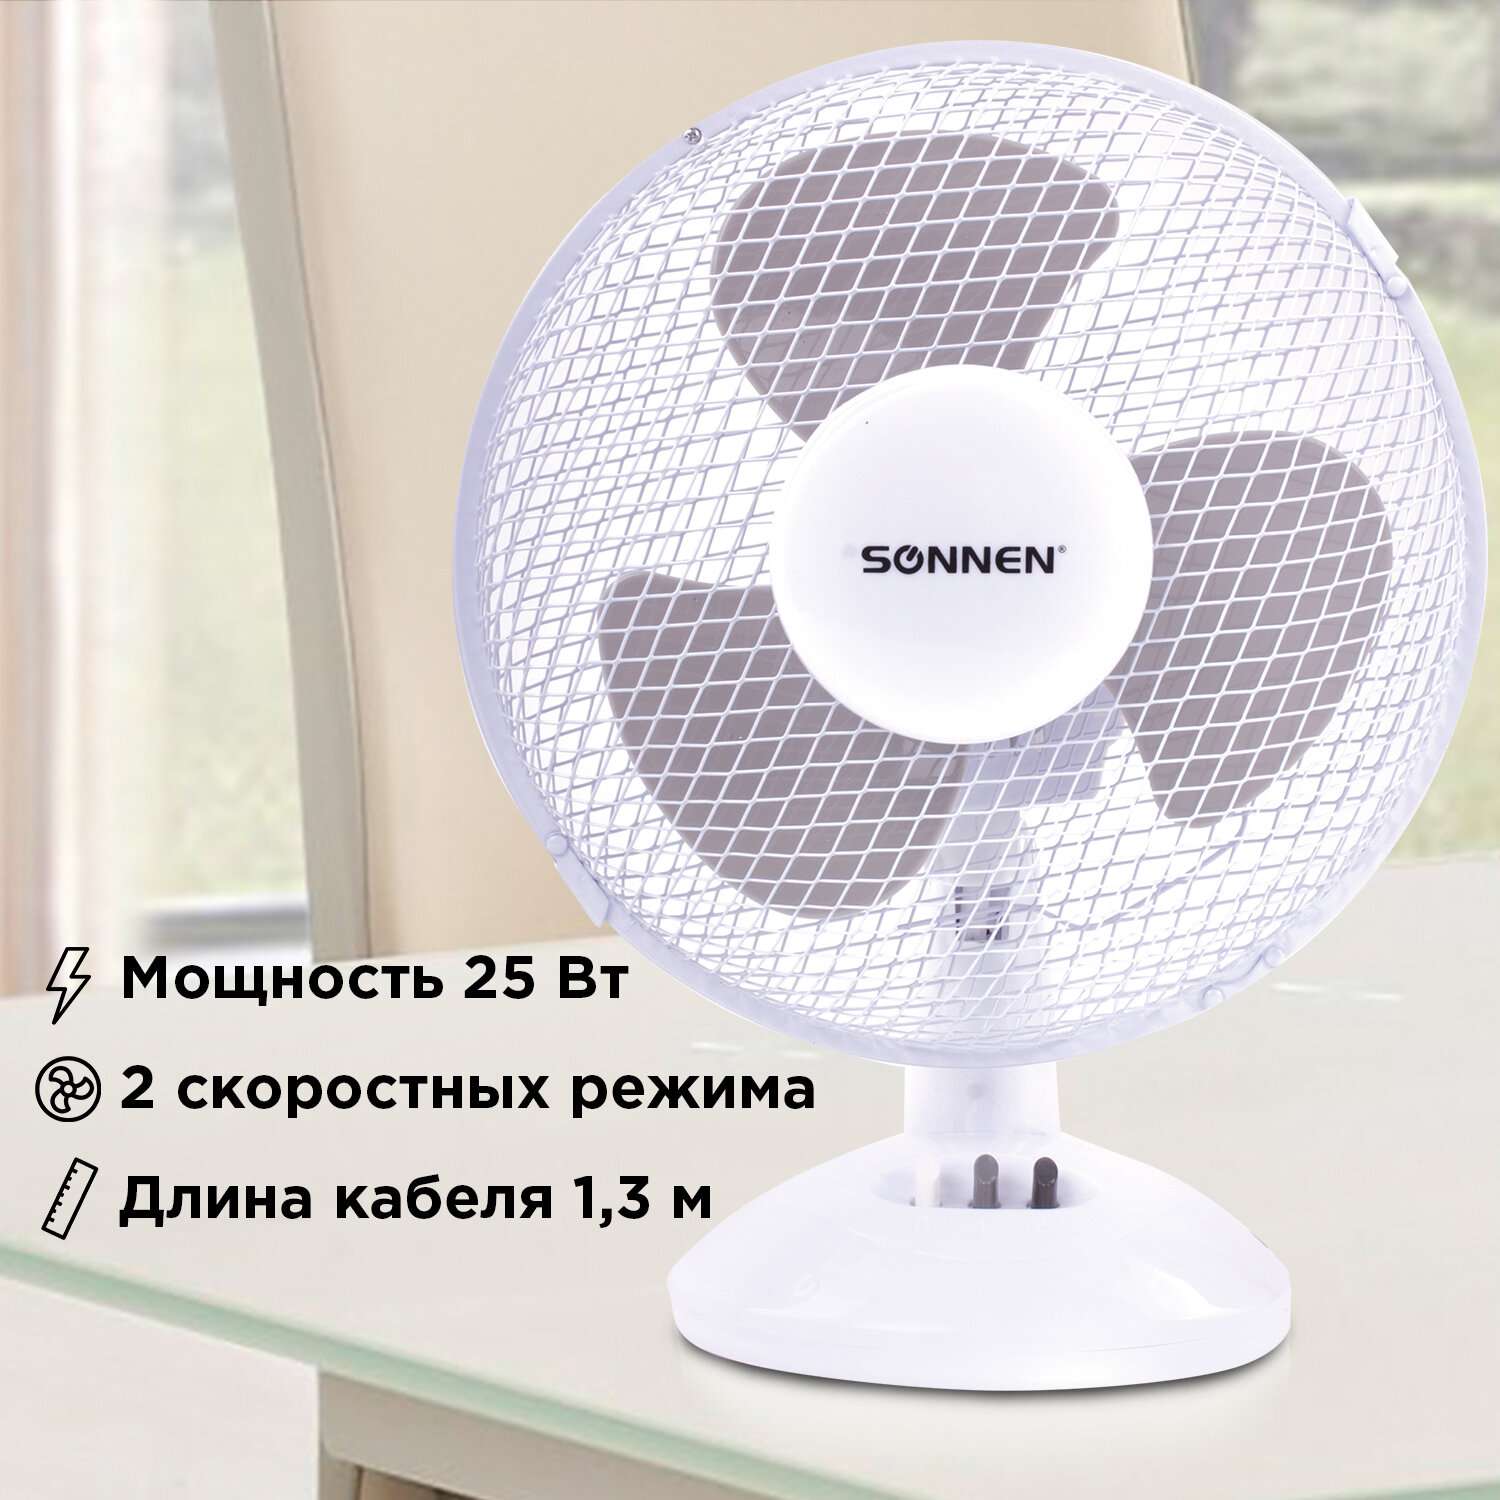 Вентилятор настольный Sonnen FT23-B6 на подставке 2 скоростных режима d=23 см 25Вт - фото 2